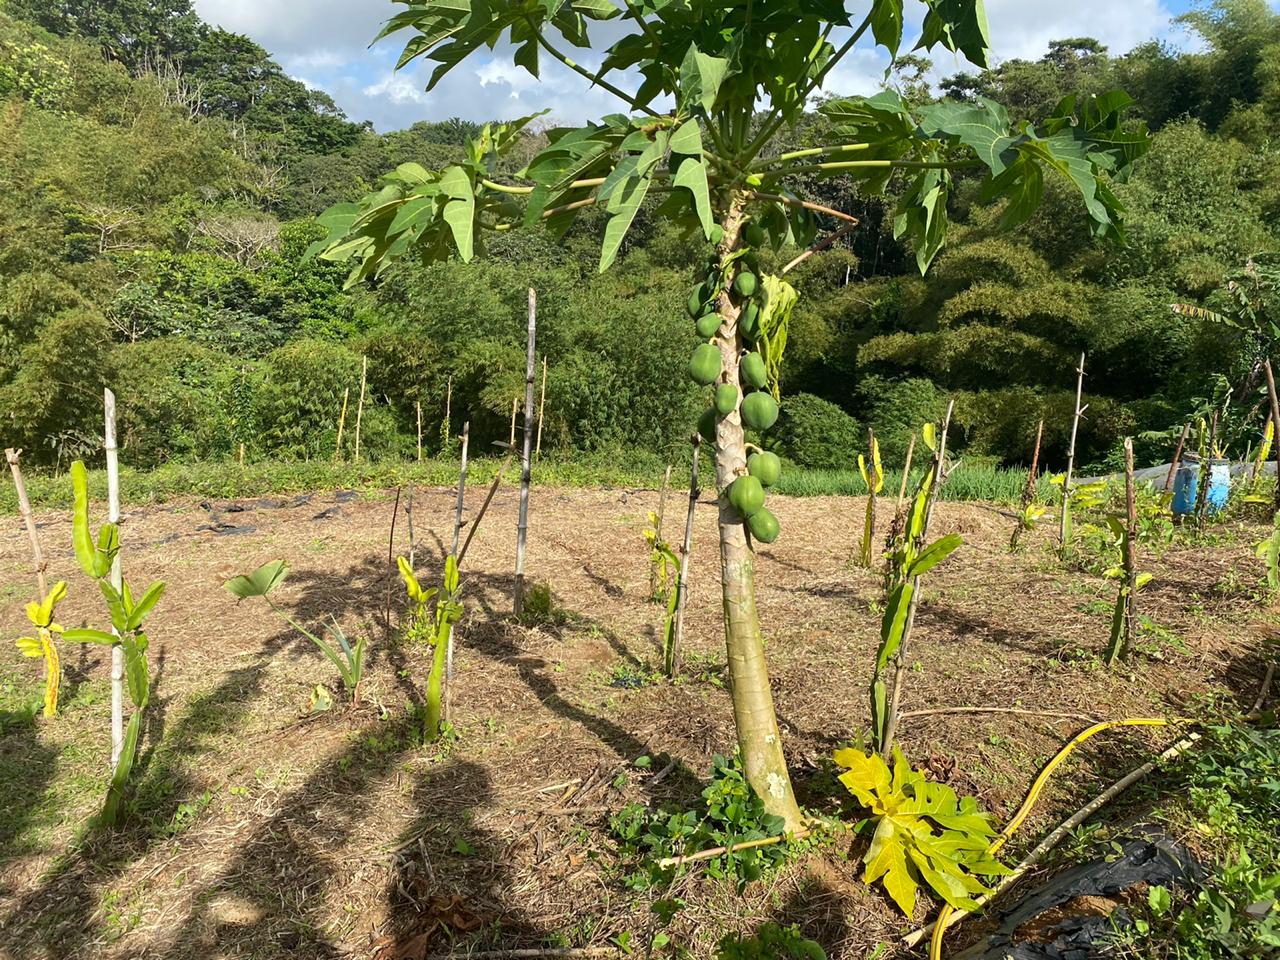     Changement climatique : un réseau pour l’agriculture dans la Caraïbe

